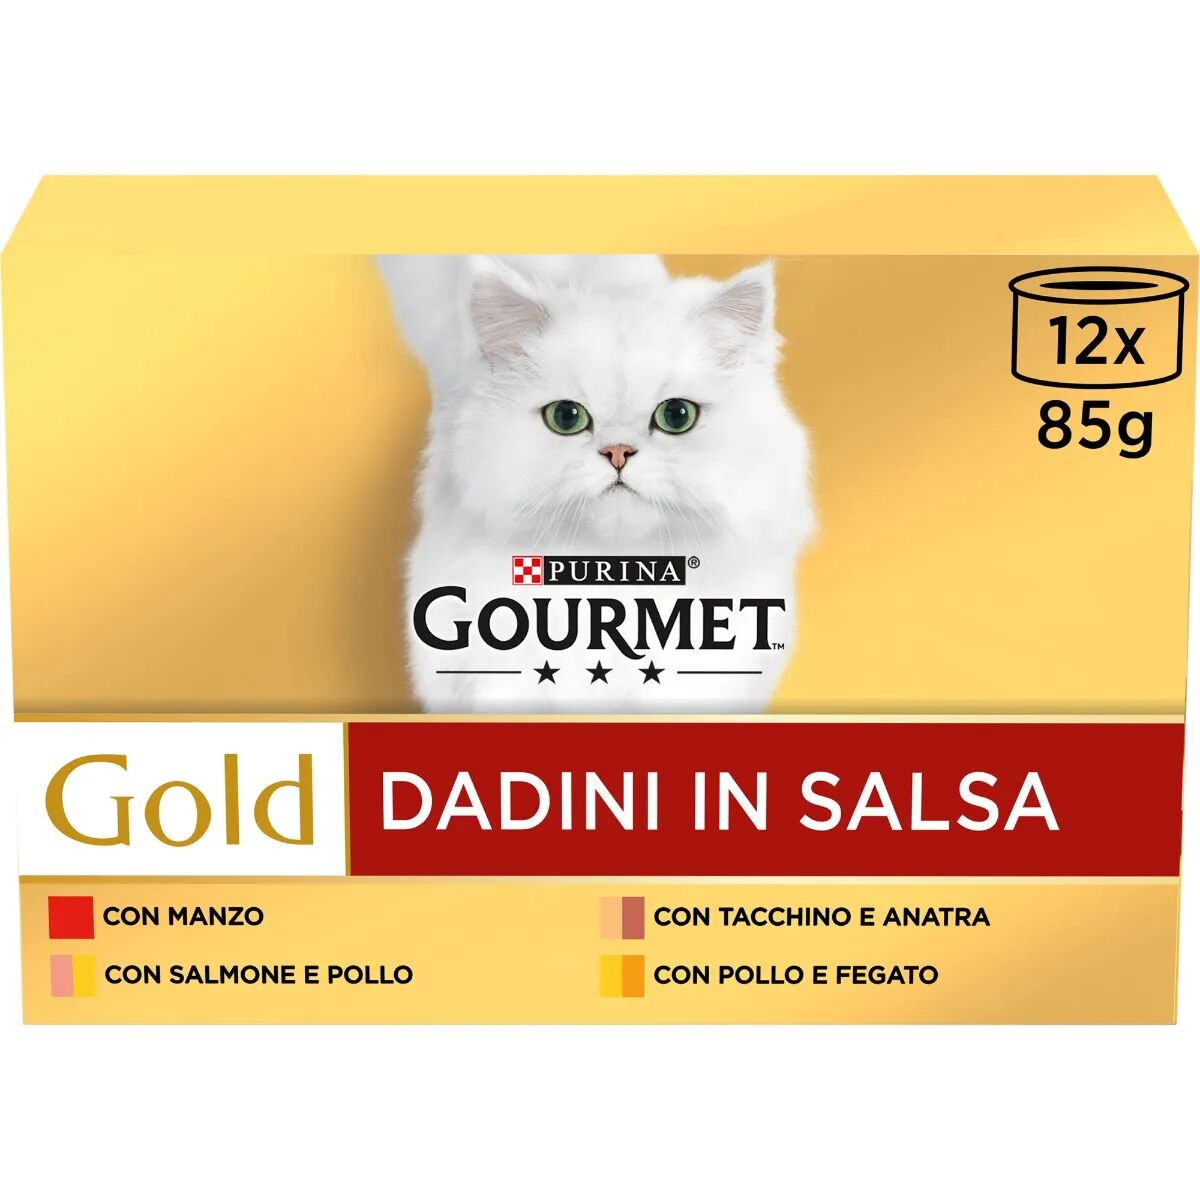 GOURMET Gold Dadini in Salsa Cat Lattina Multipack 12x85G MIX CARNE E PESCE